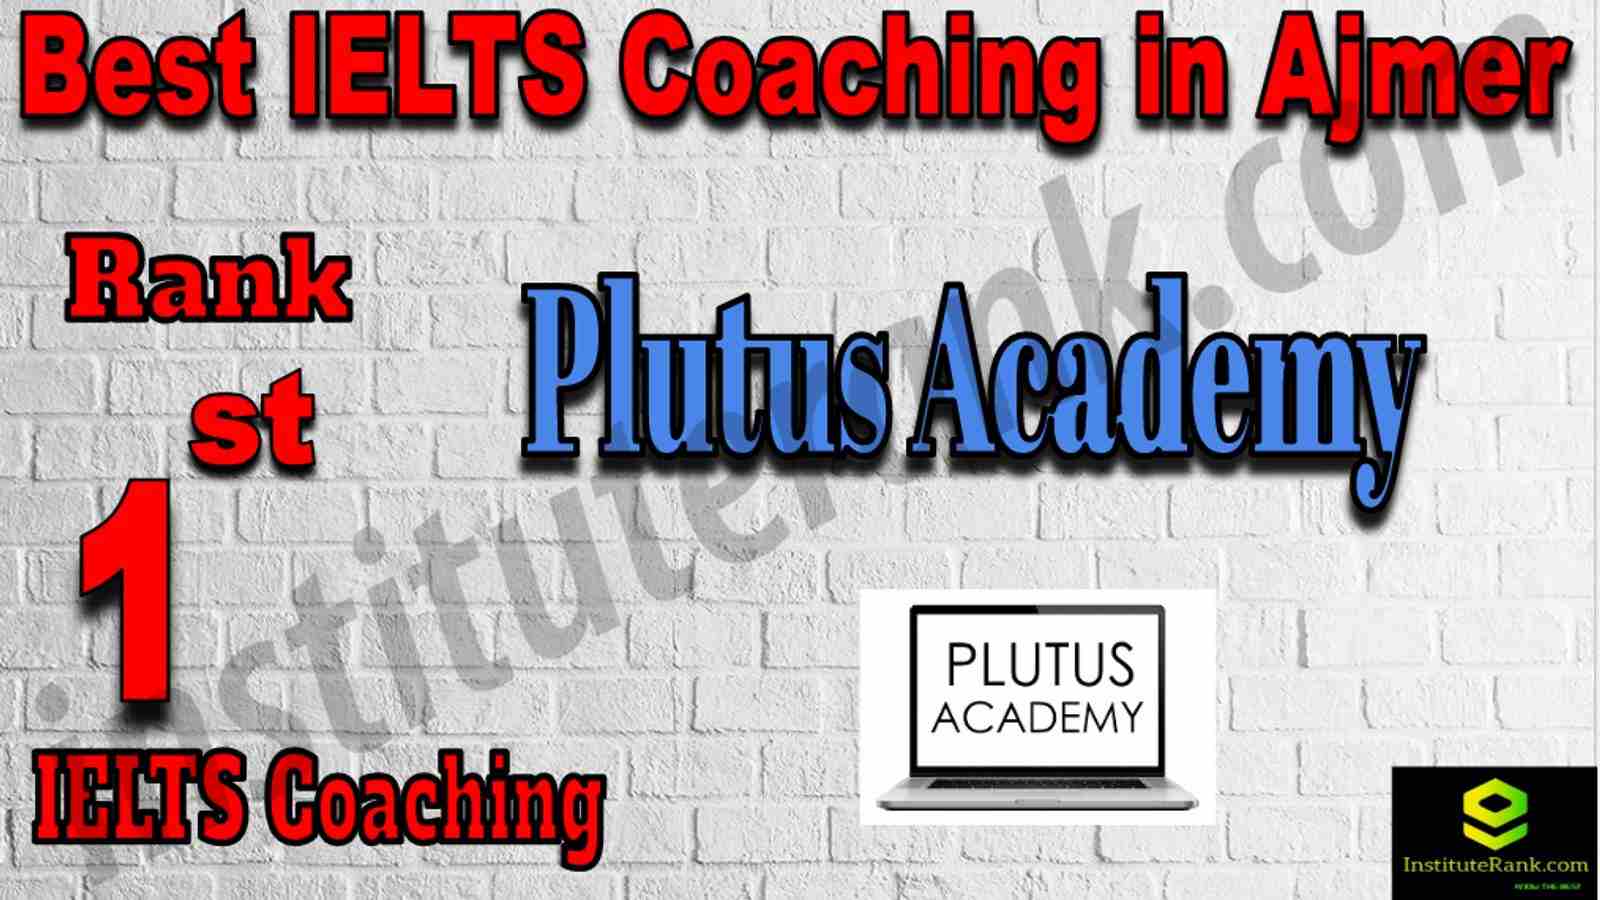 1st Best IELTS Coaching in Ajmer